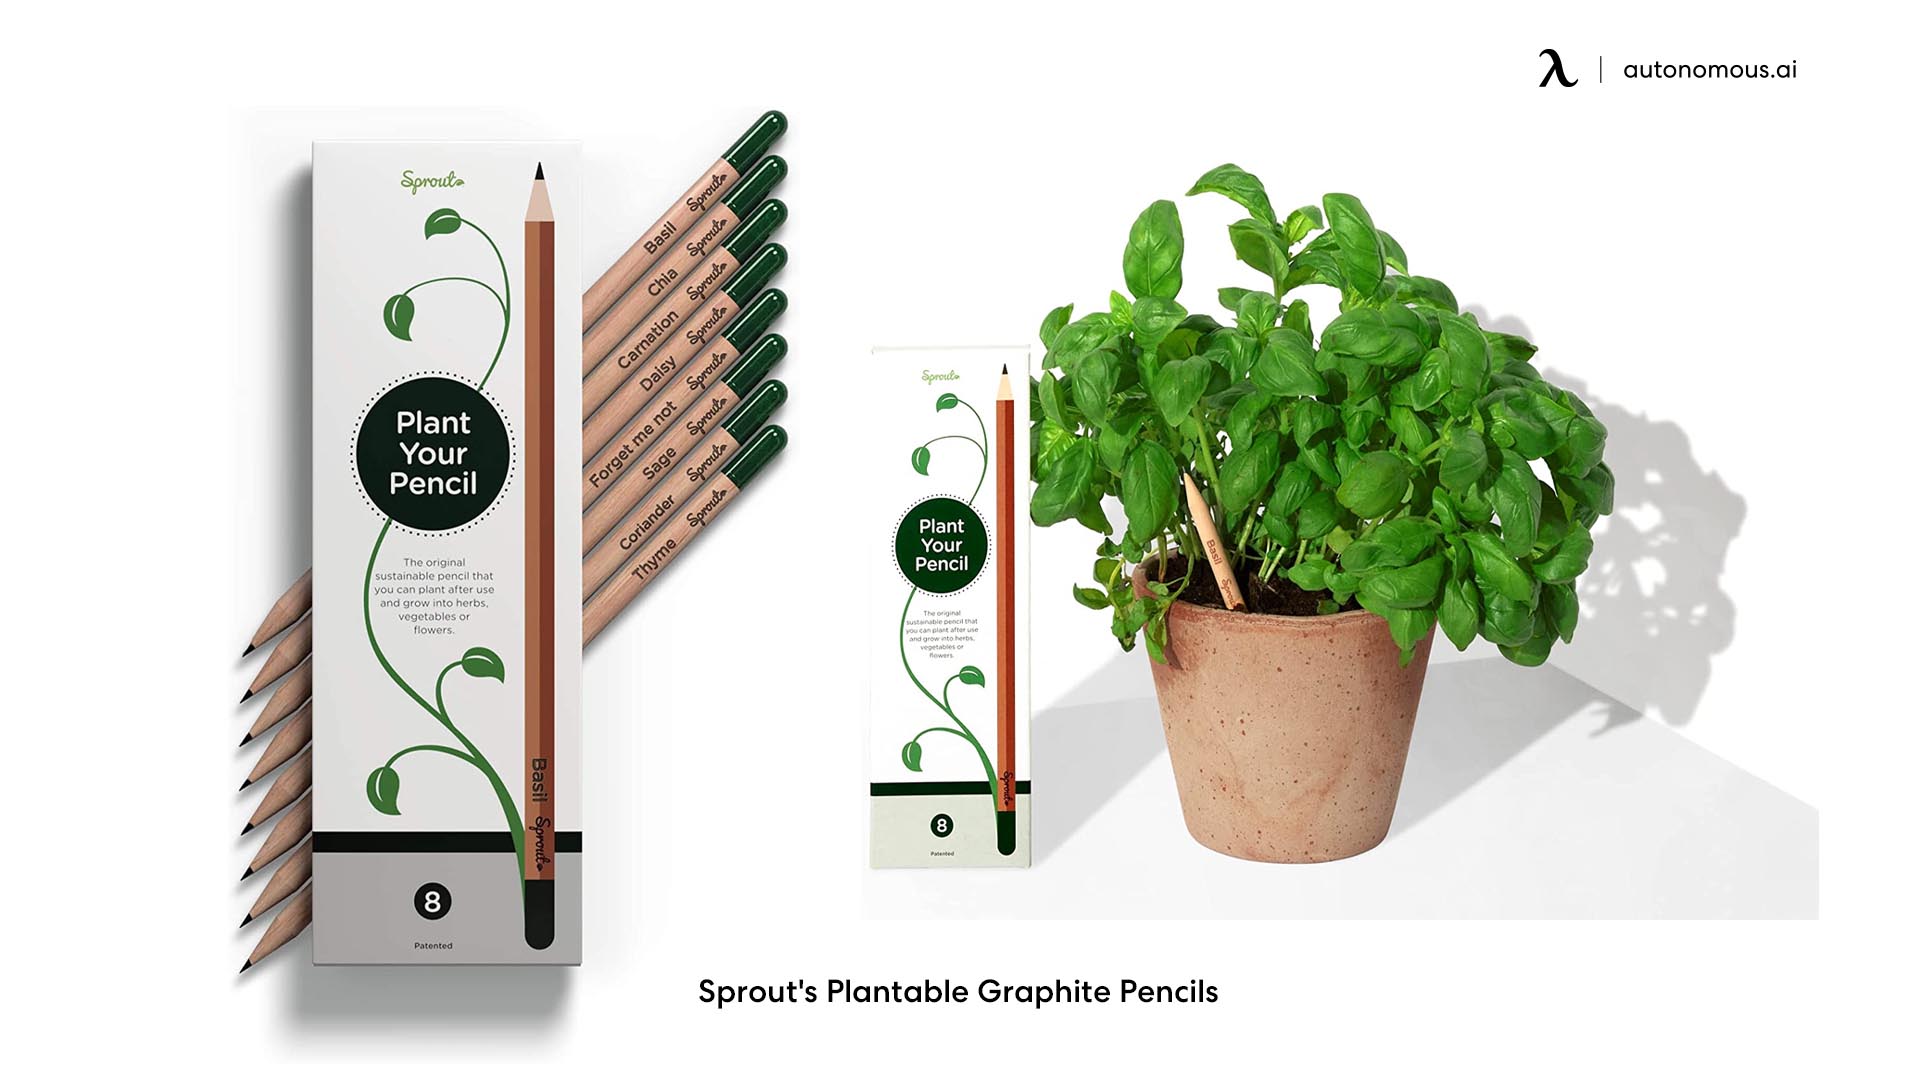 Sprout's Plantable Graphite Pencils